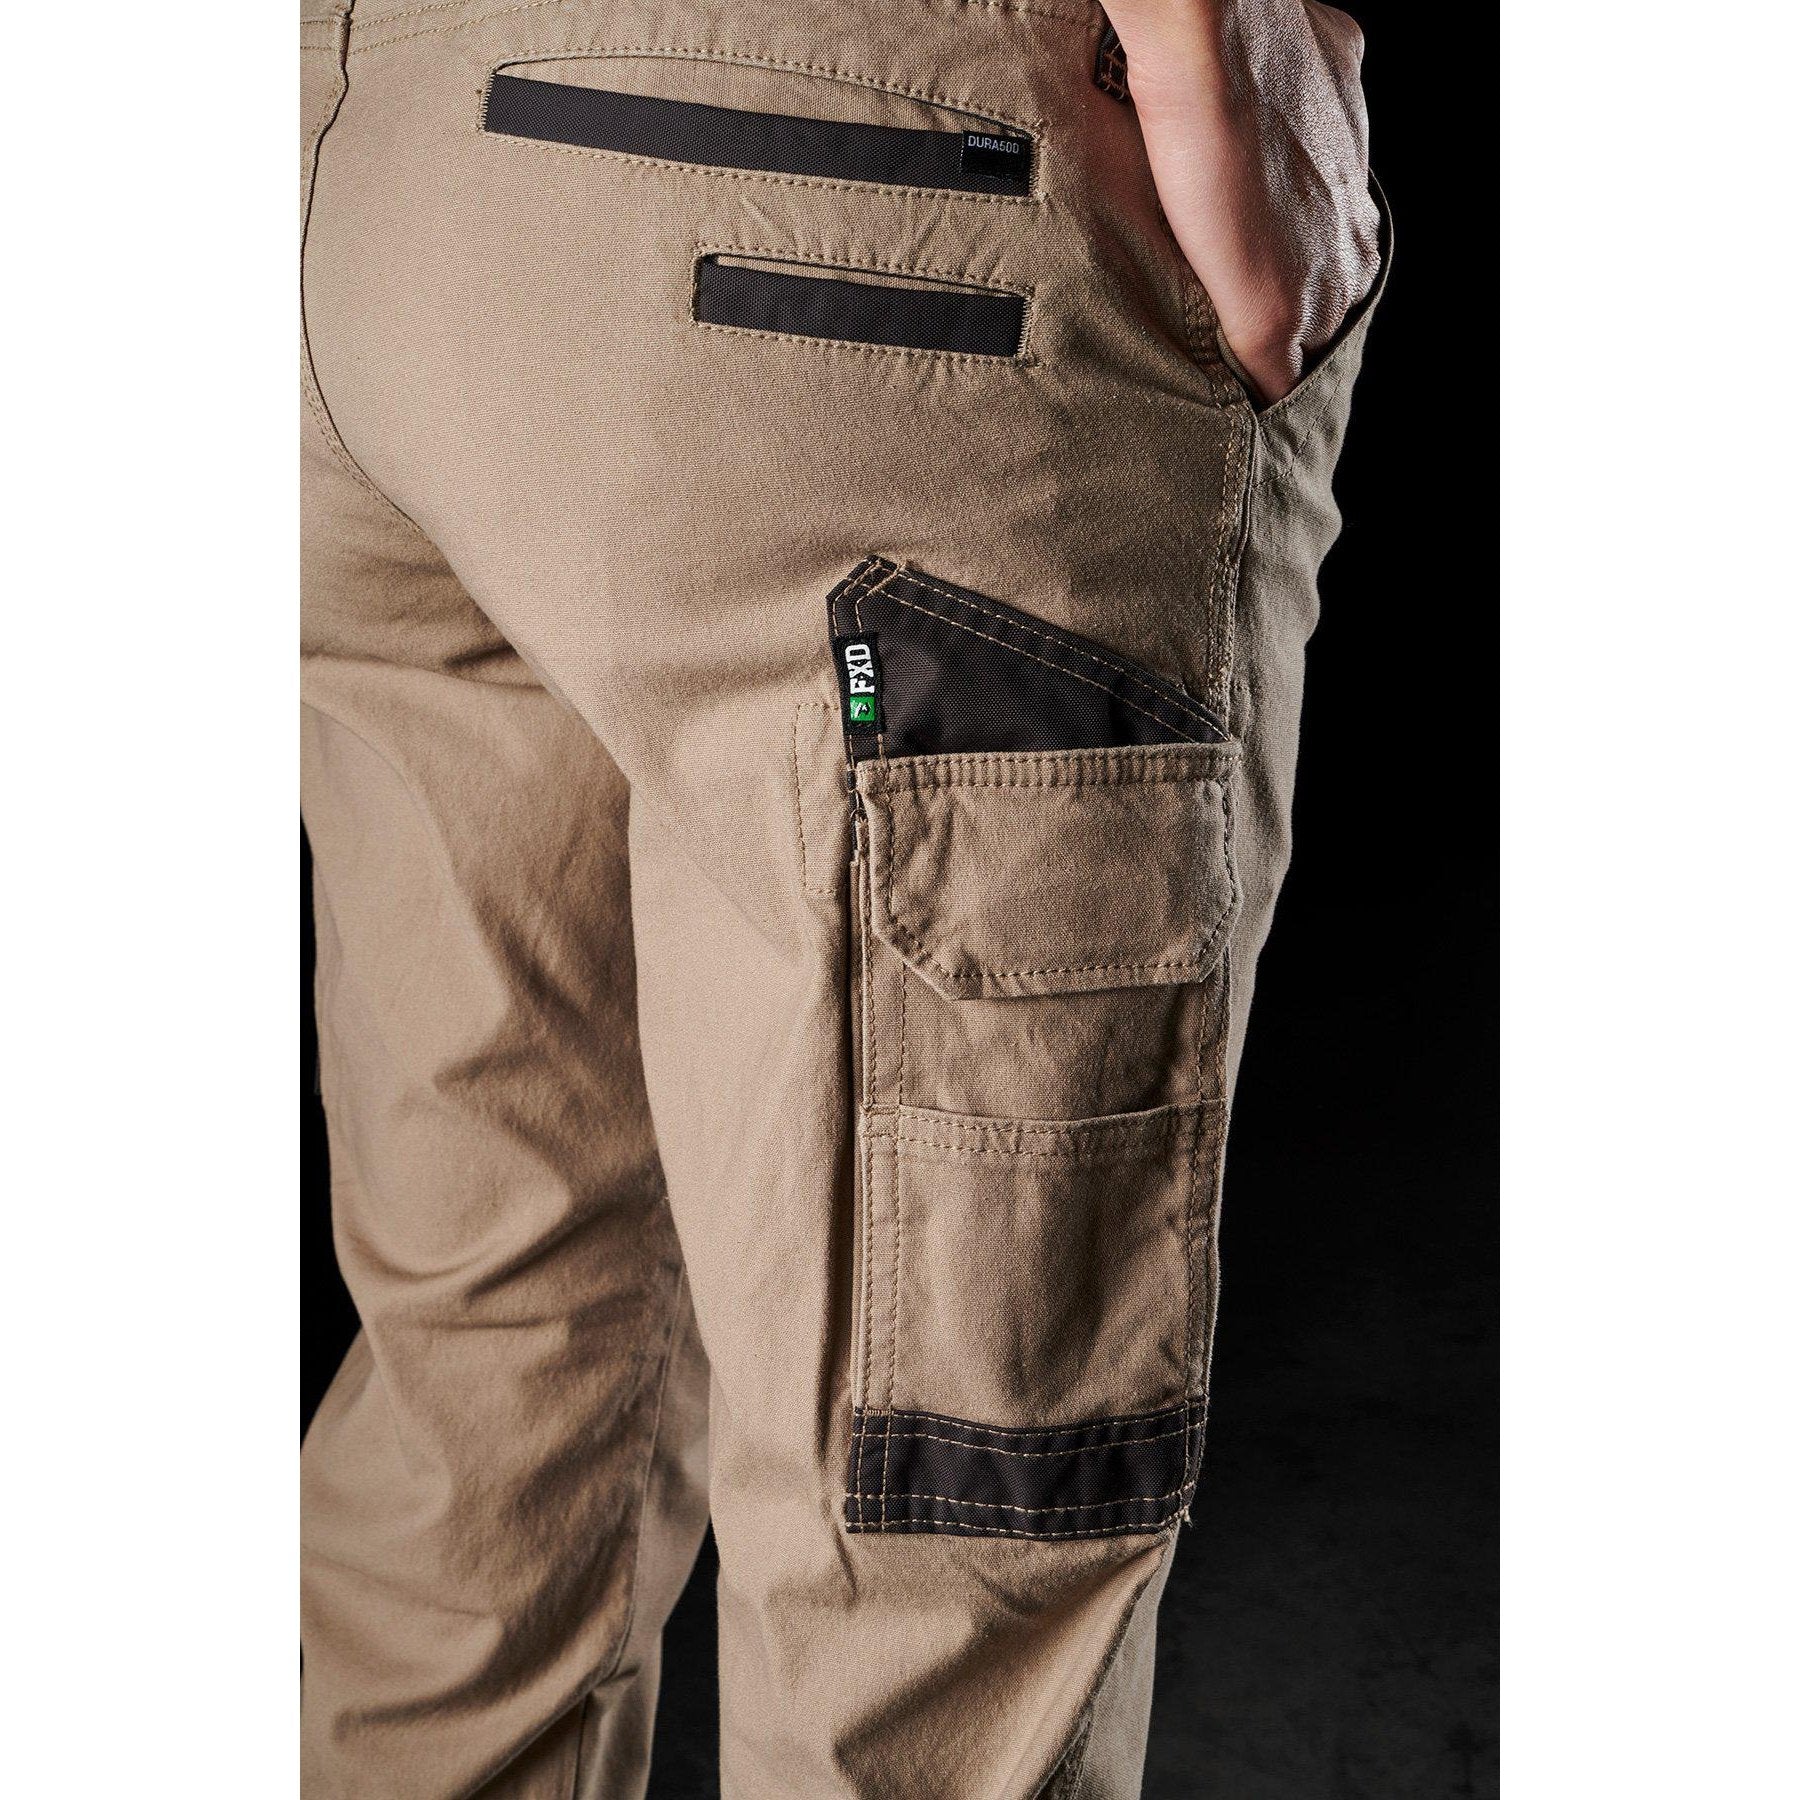 FXD WP-3W Ladies Stretch Work Pants (FX11906200) - Khaki - LOD